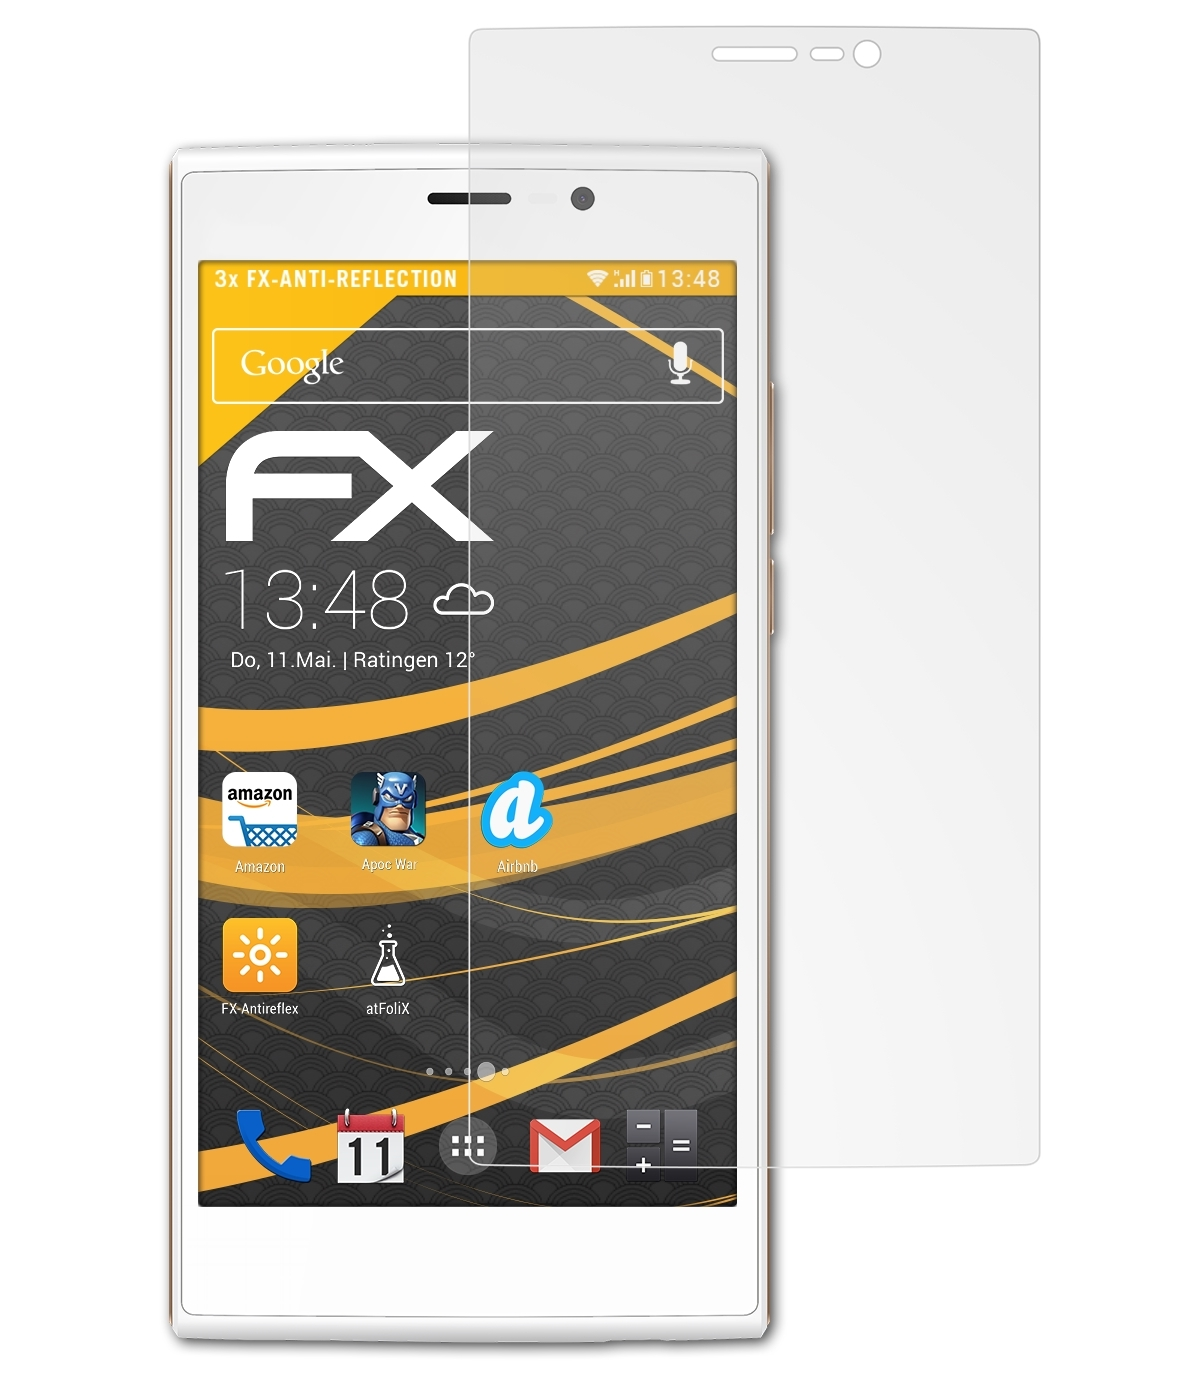 FX-Antireflex Fab Wiko 3x Displayschutz(für 4G) ATFOLIX Ridge